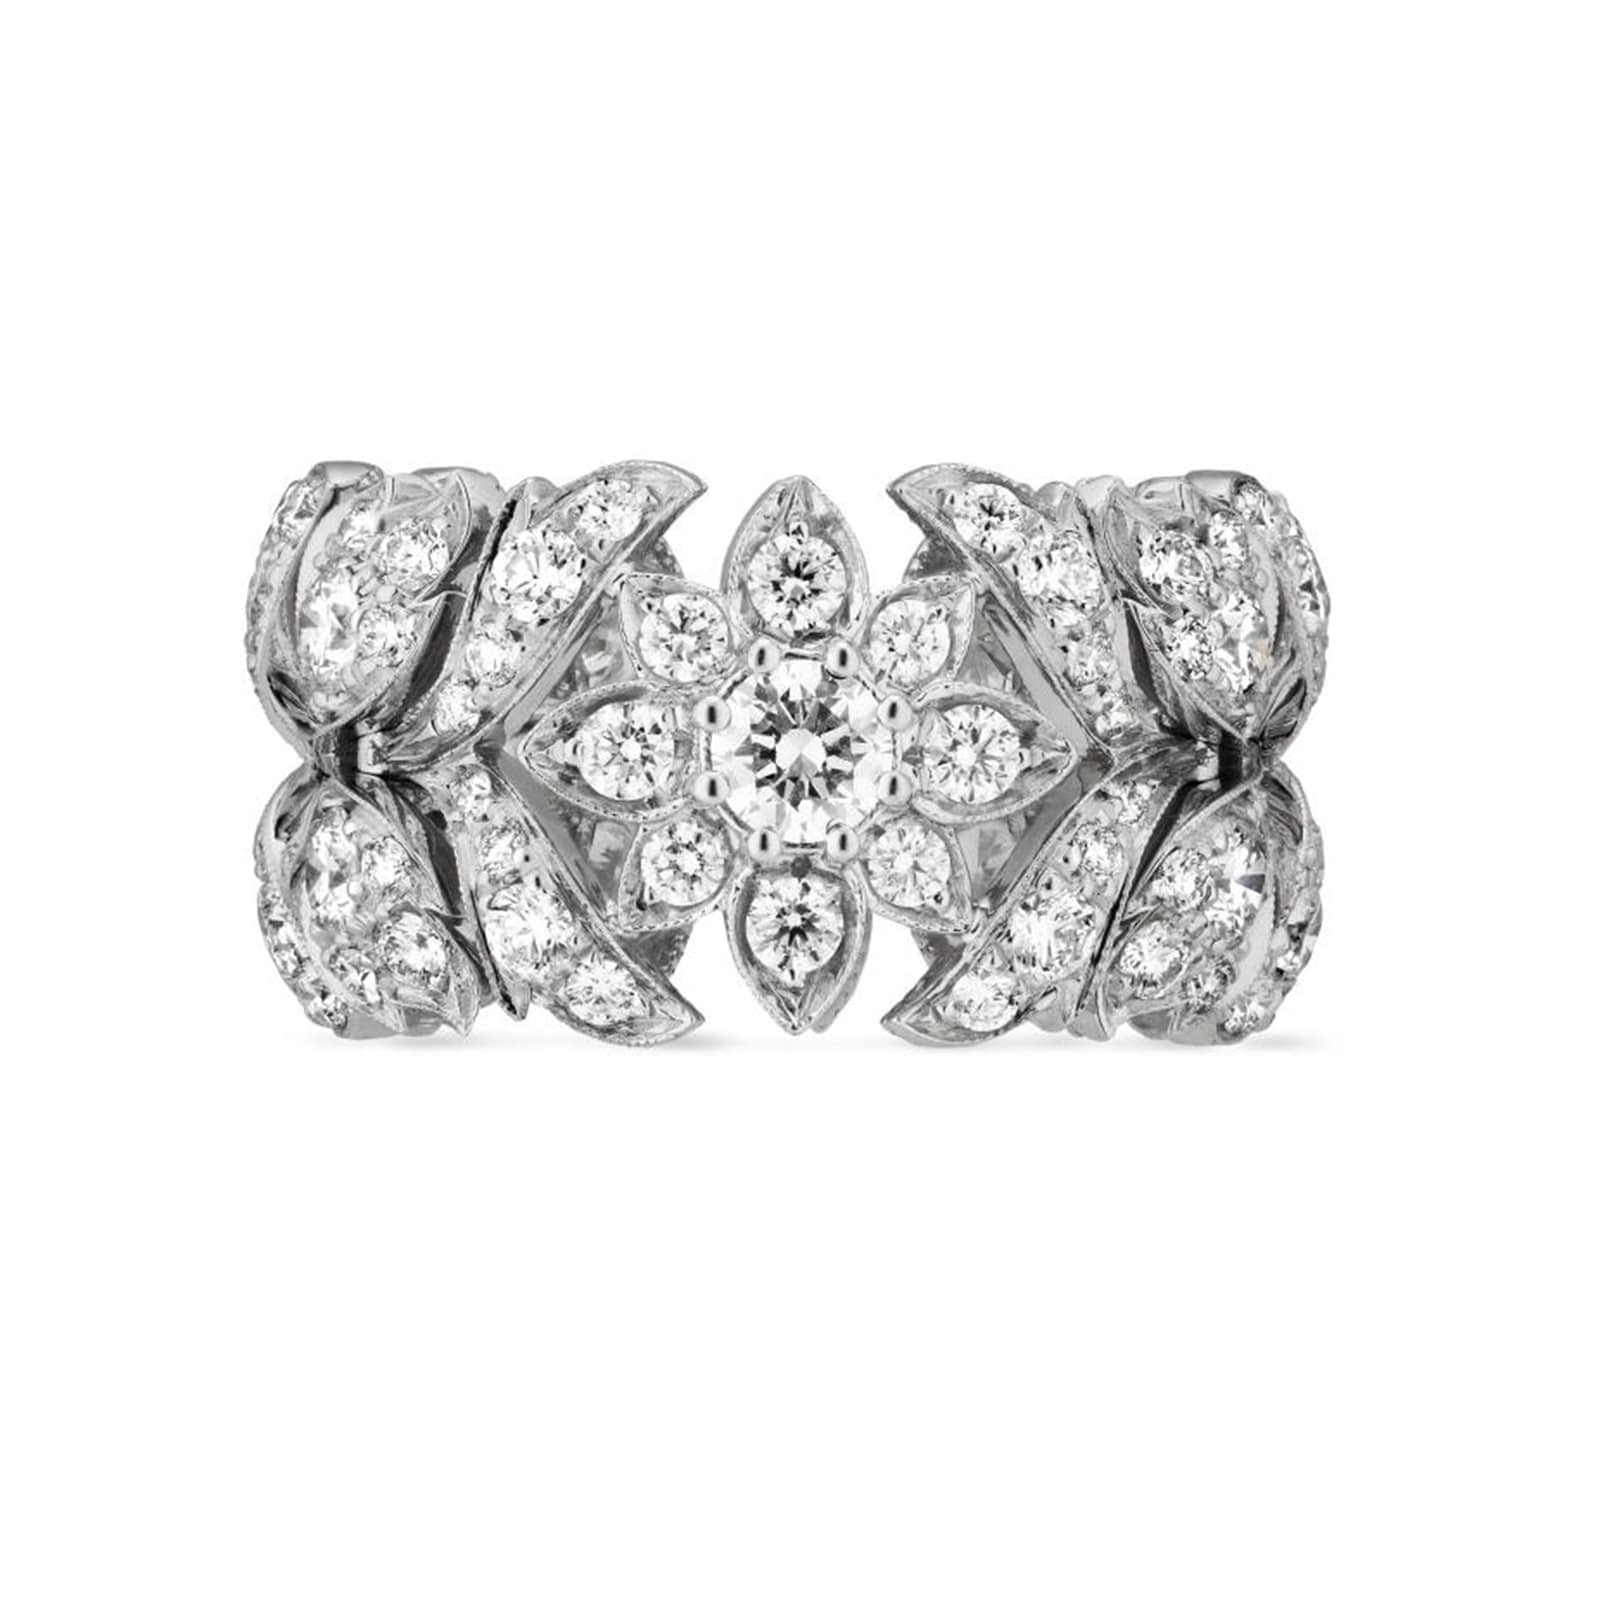 18ct White Gold Diamond Ring - Ring Size M